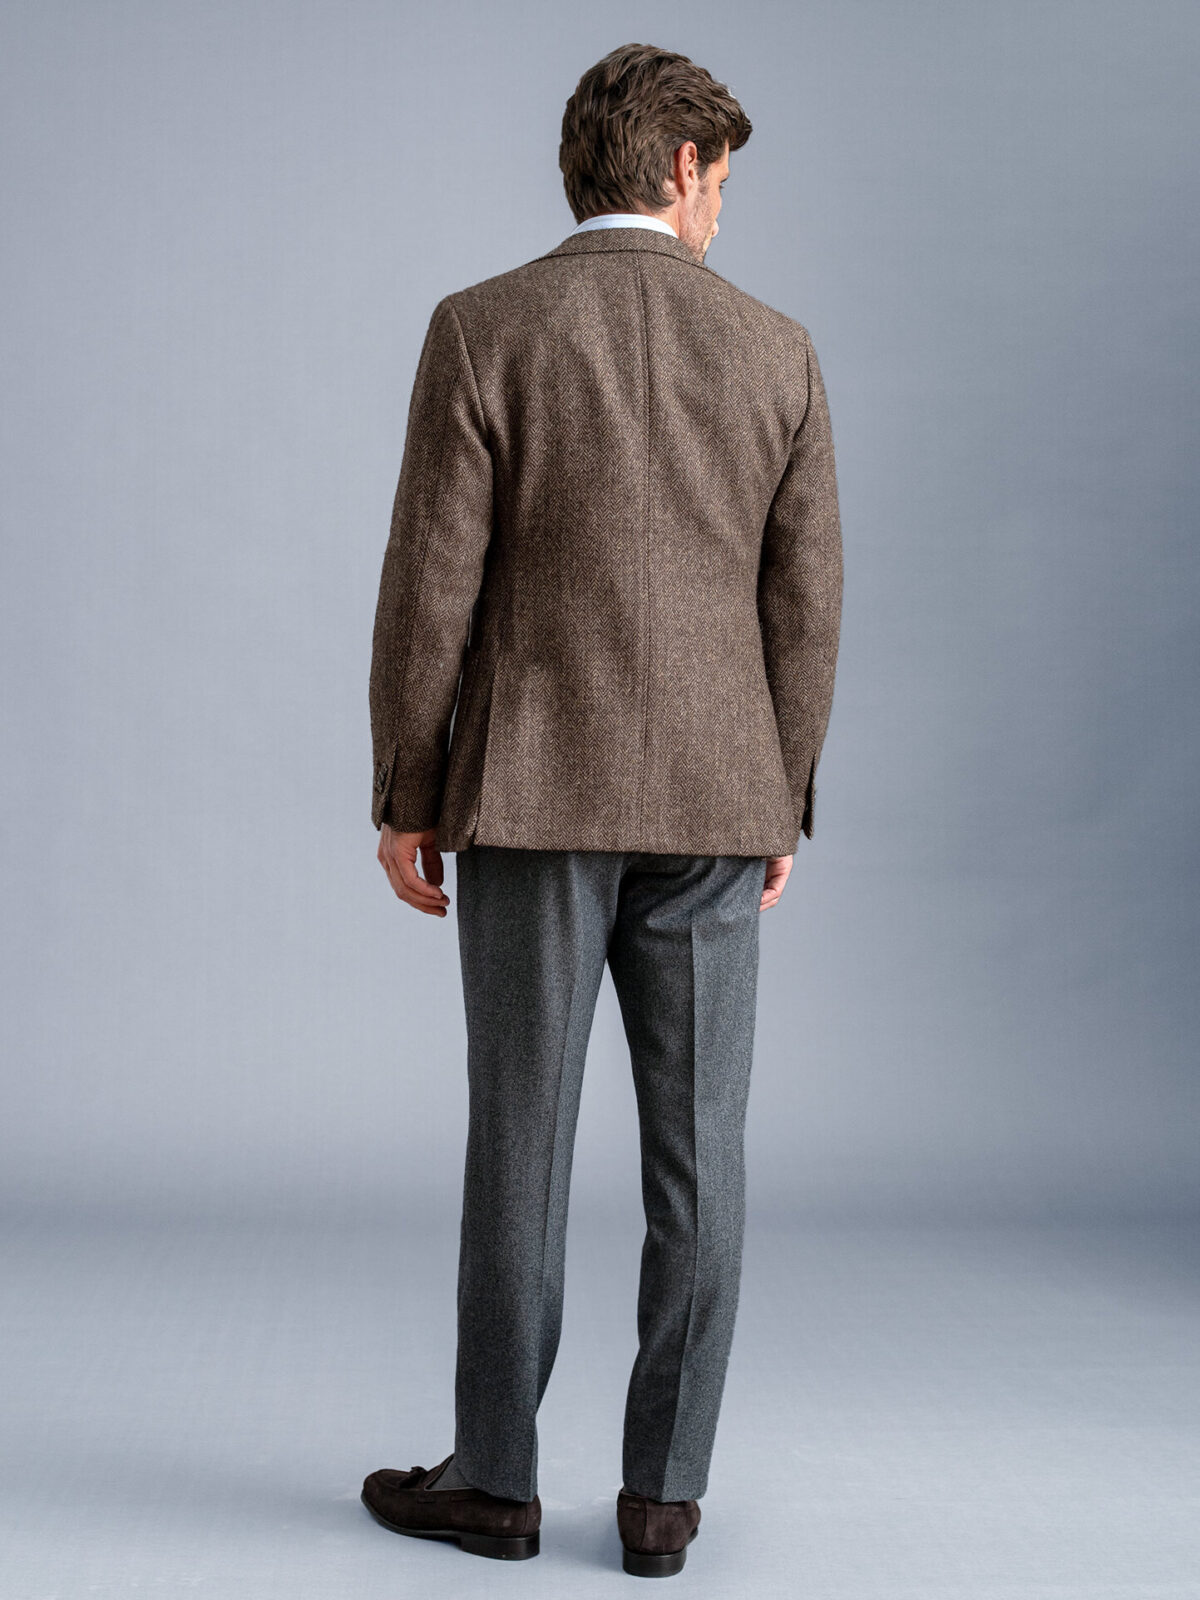 Waverly Brown Herringbone Tweed Jacket - Custom Fit Tailored Clothing